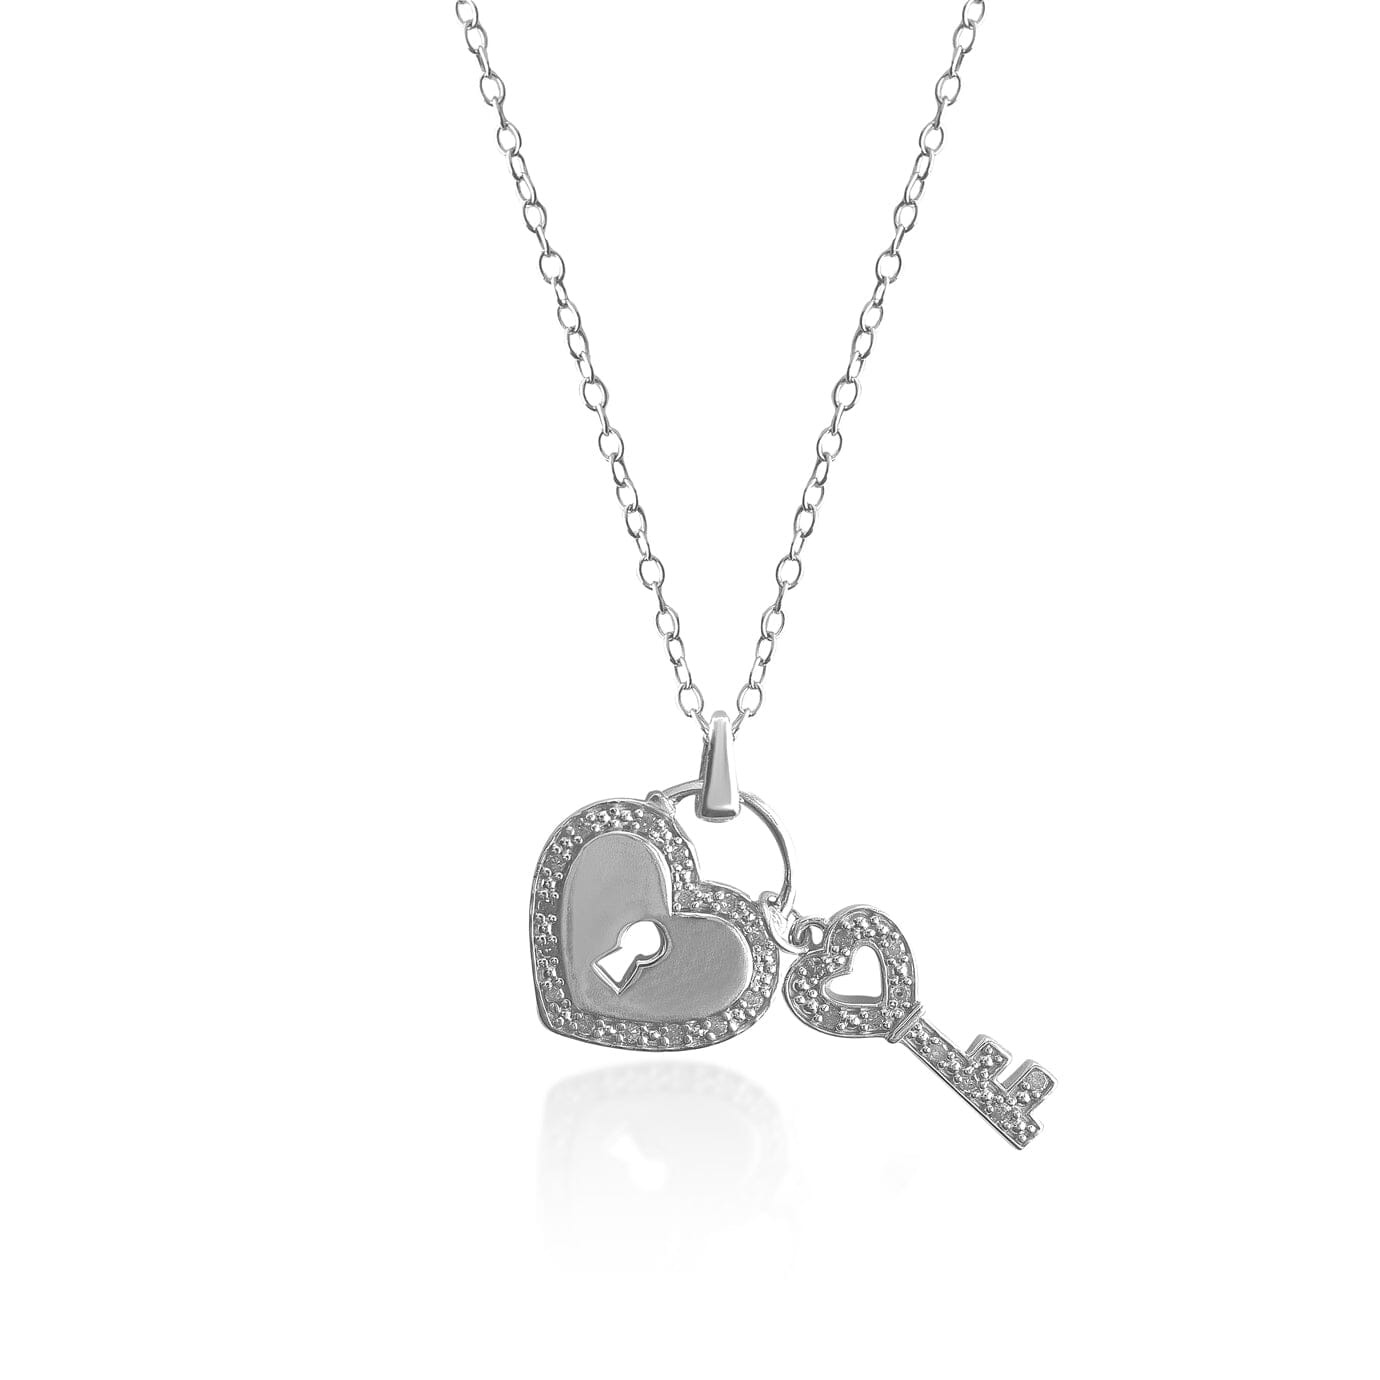 Lock & Key Charm Necklace